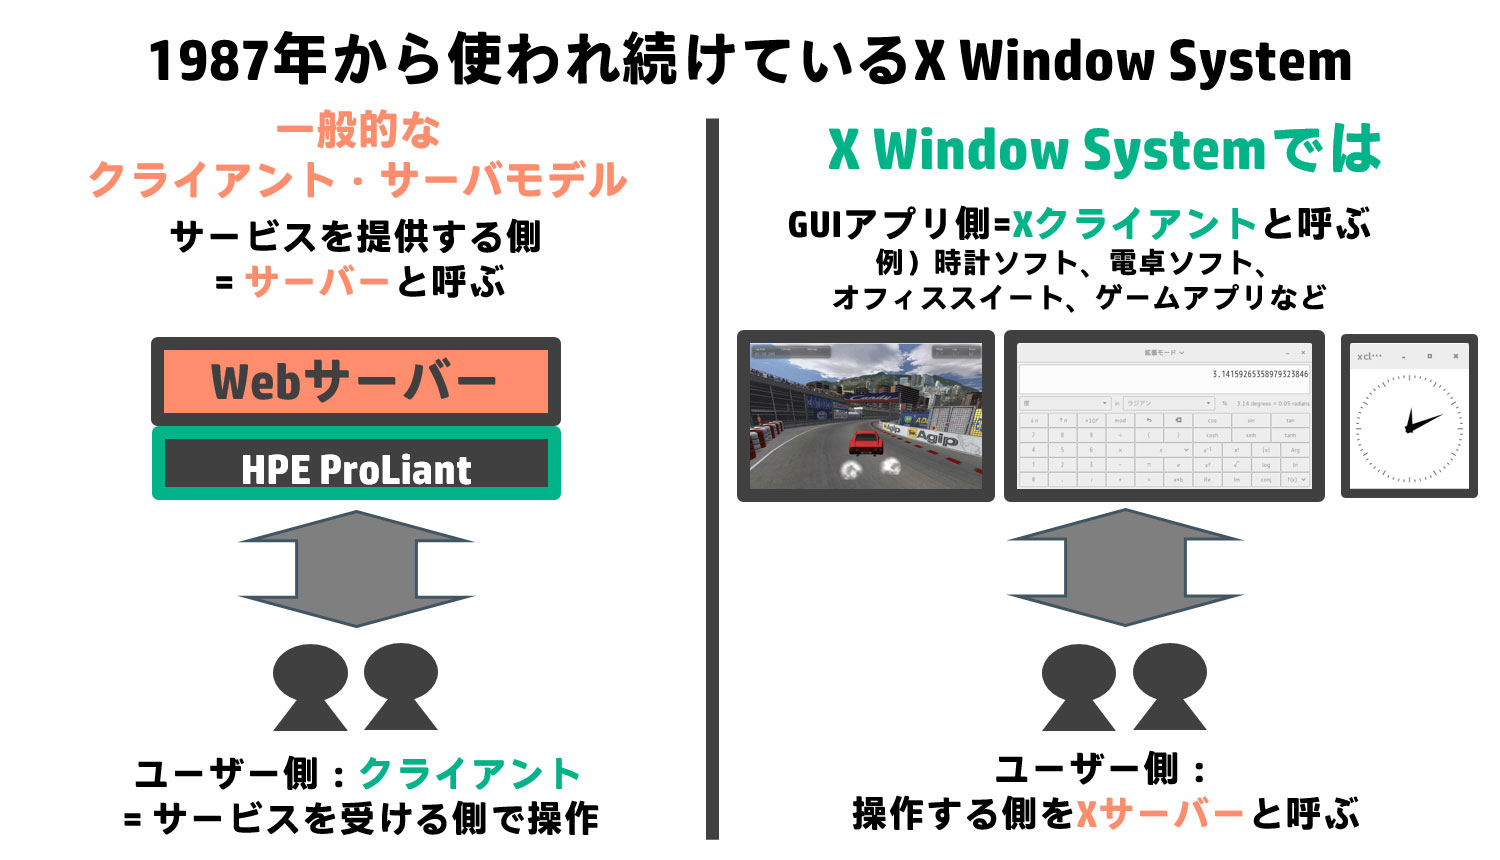 1987N獡łX Window System